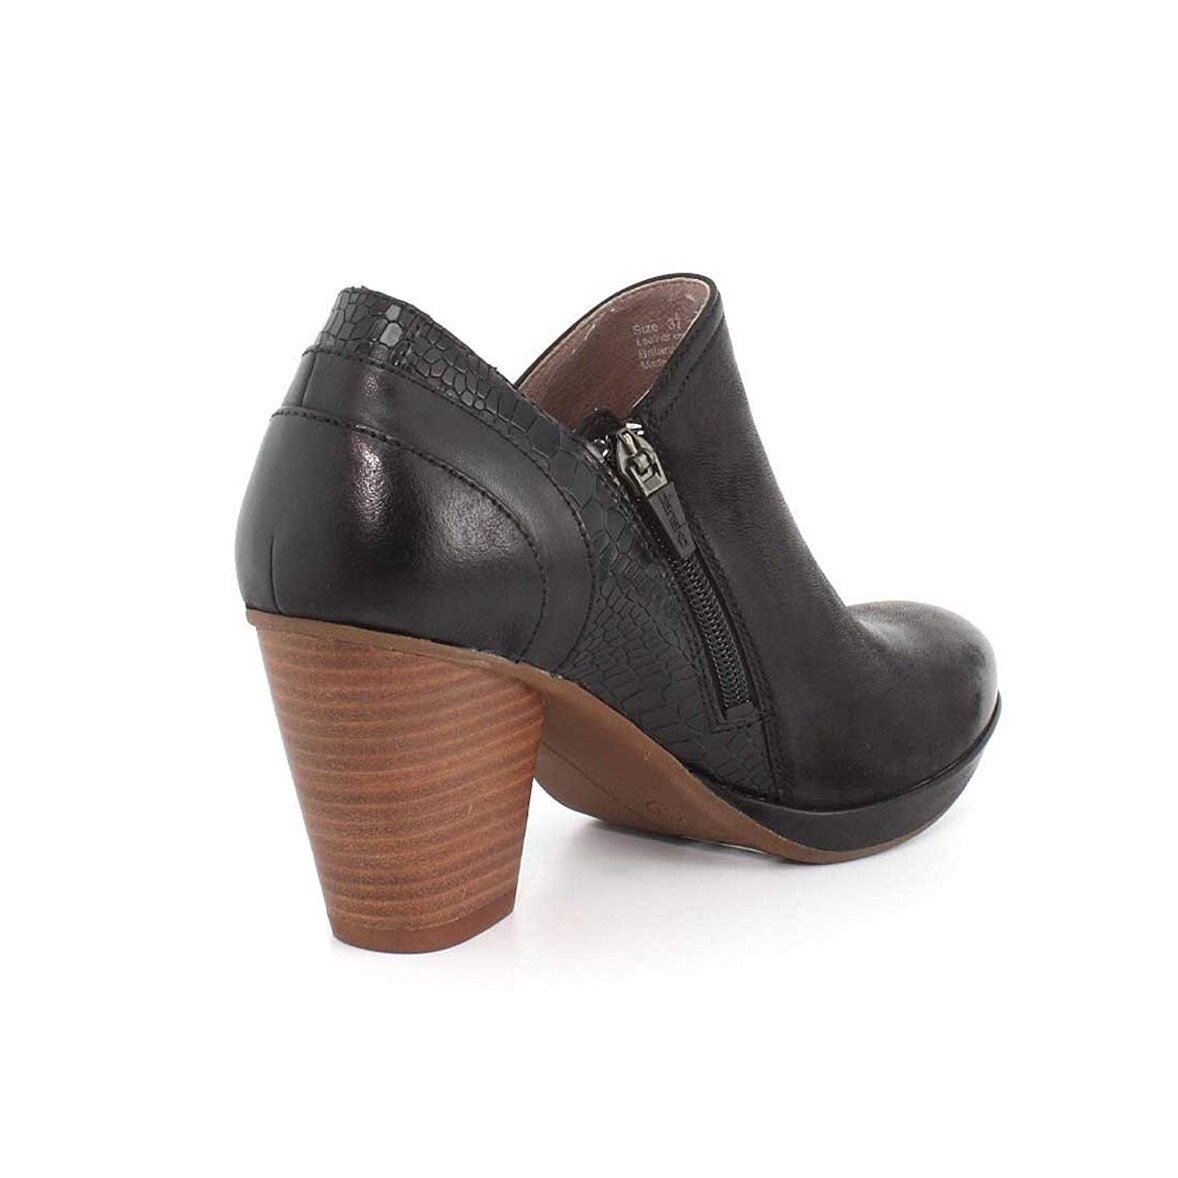 dansko women's marcia ankle boot